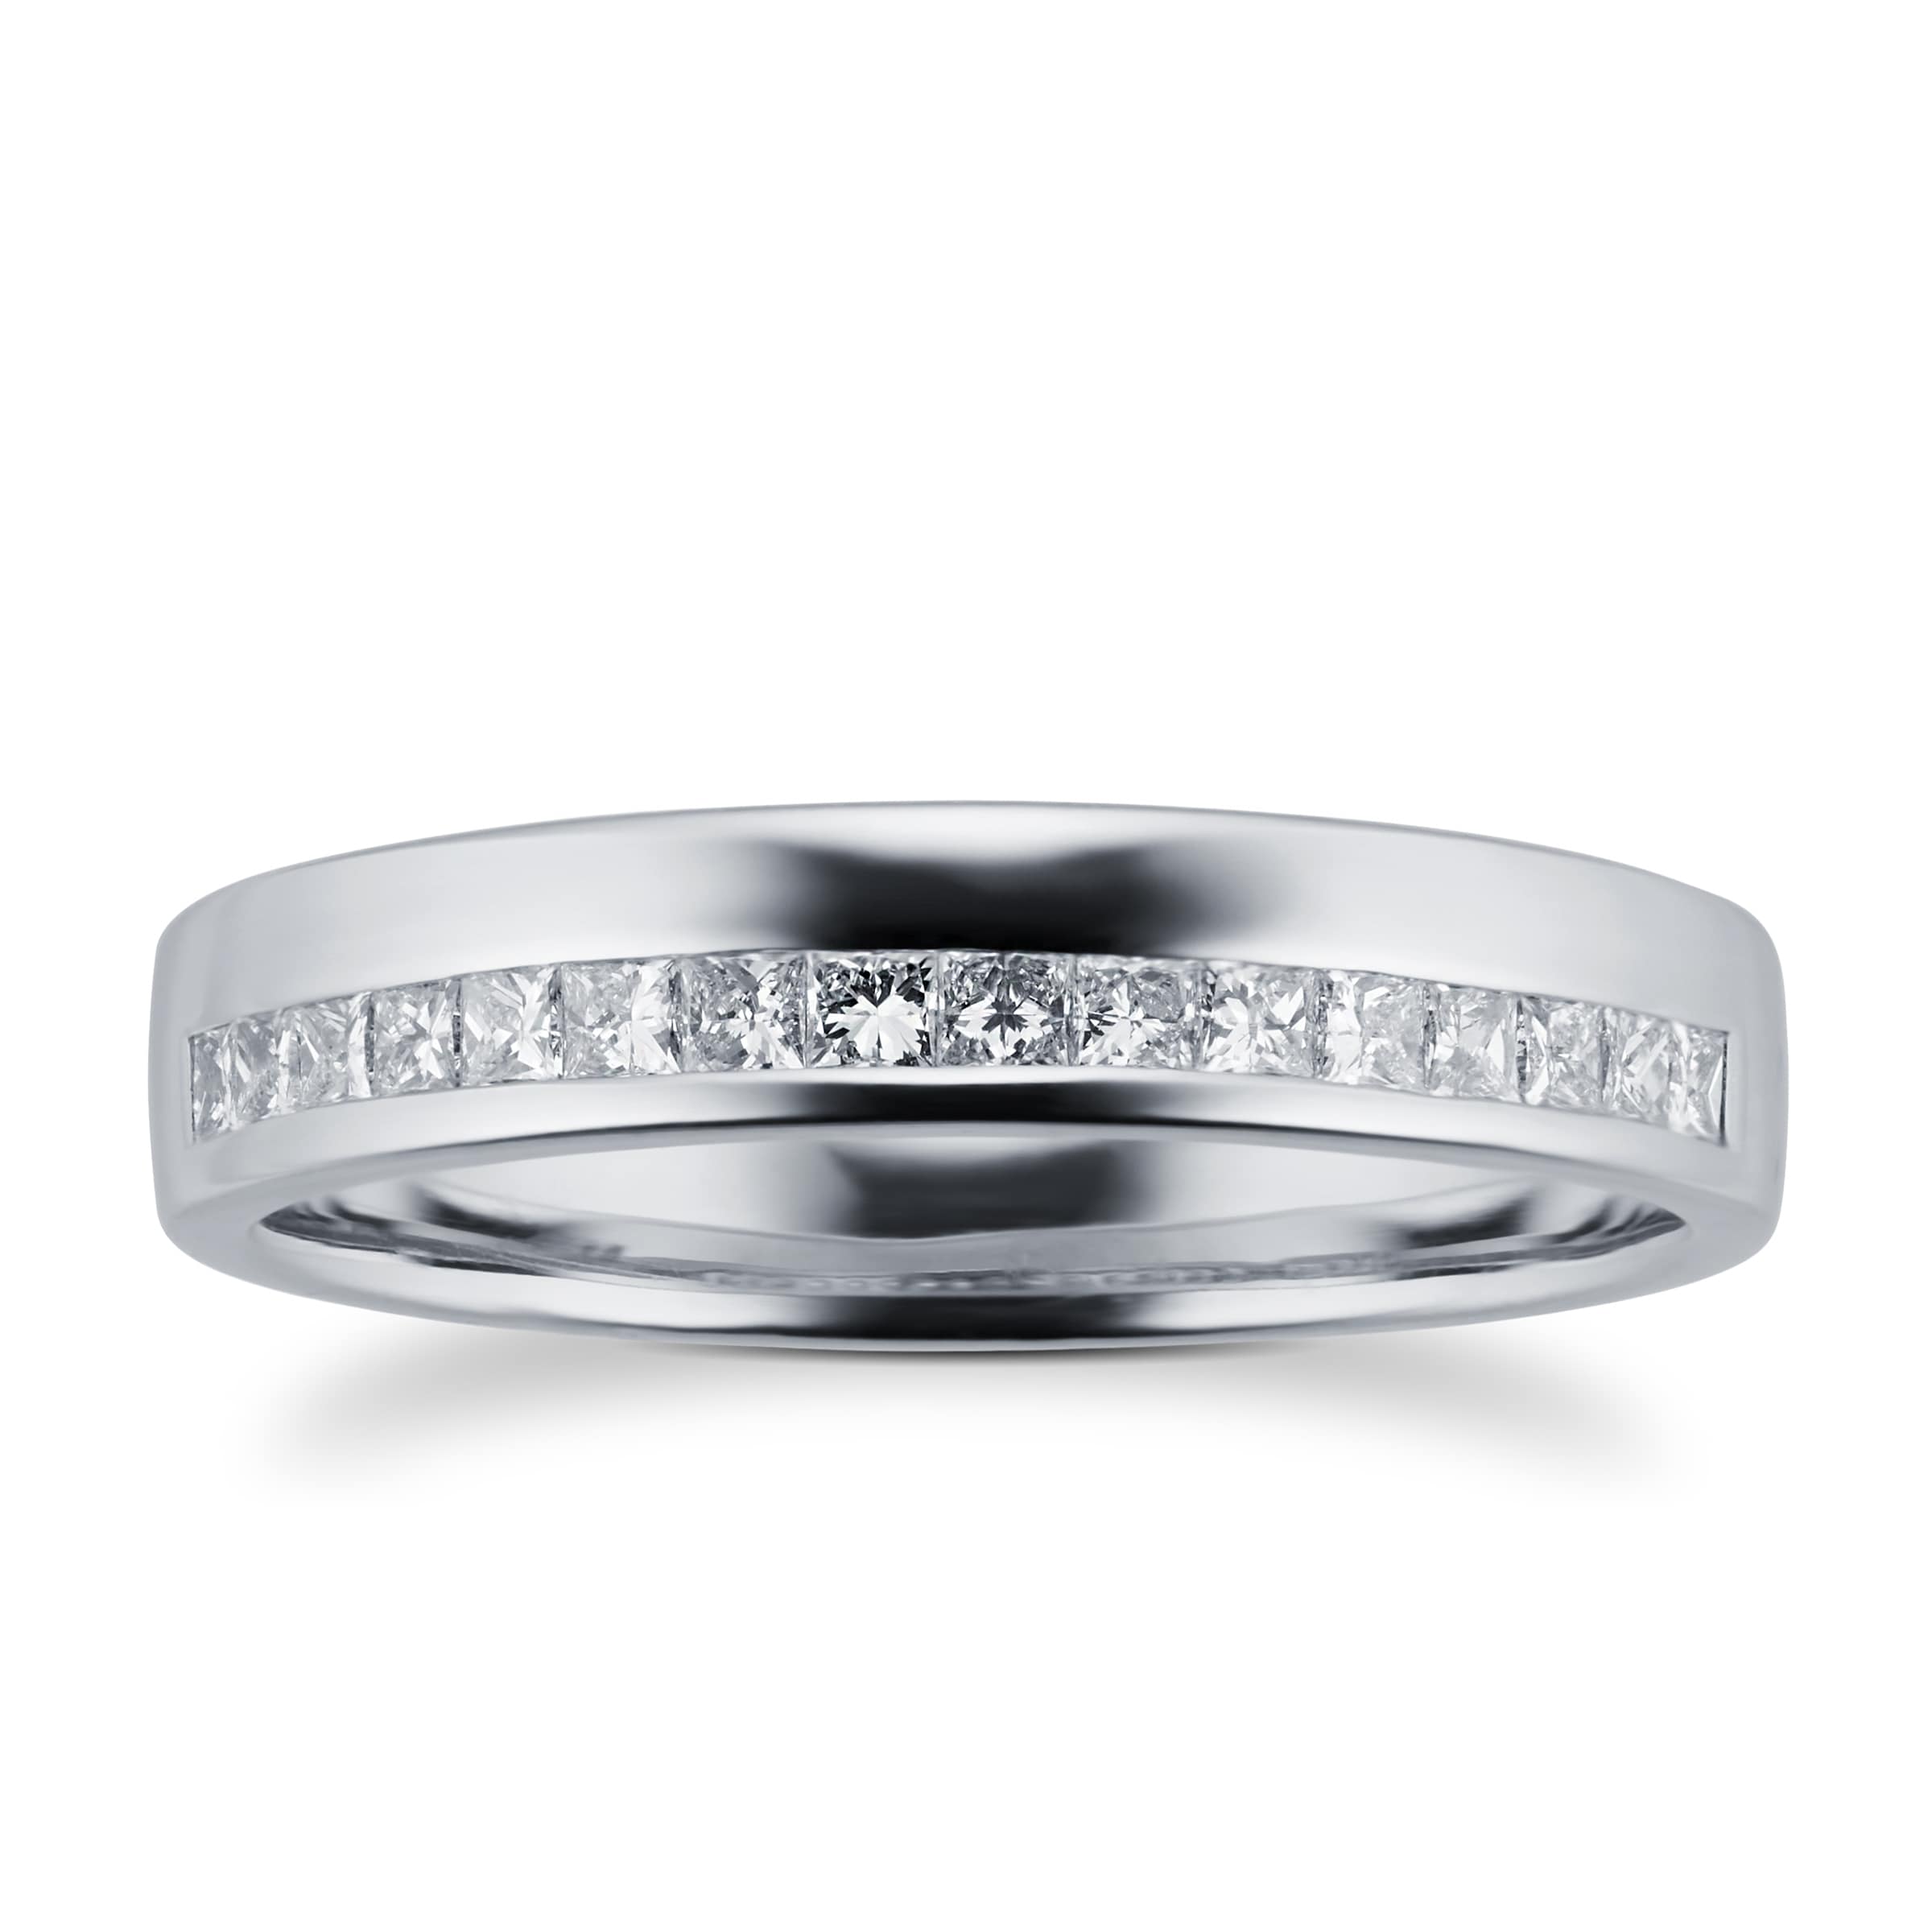 Princess Cut 0.33 Total Carat Weight Diamond Ladies Wedding Ring Set In Platinum - Ring Size Q